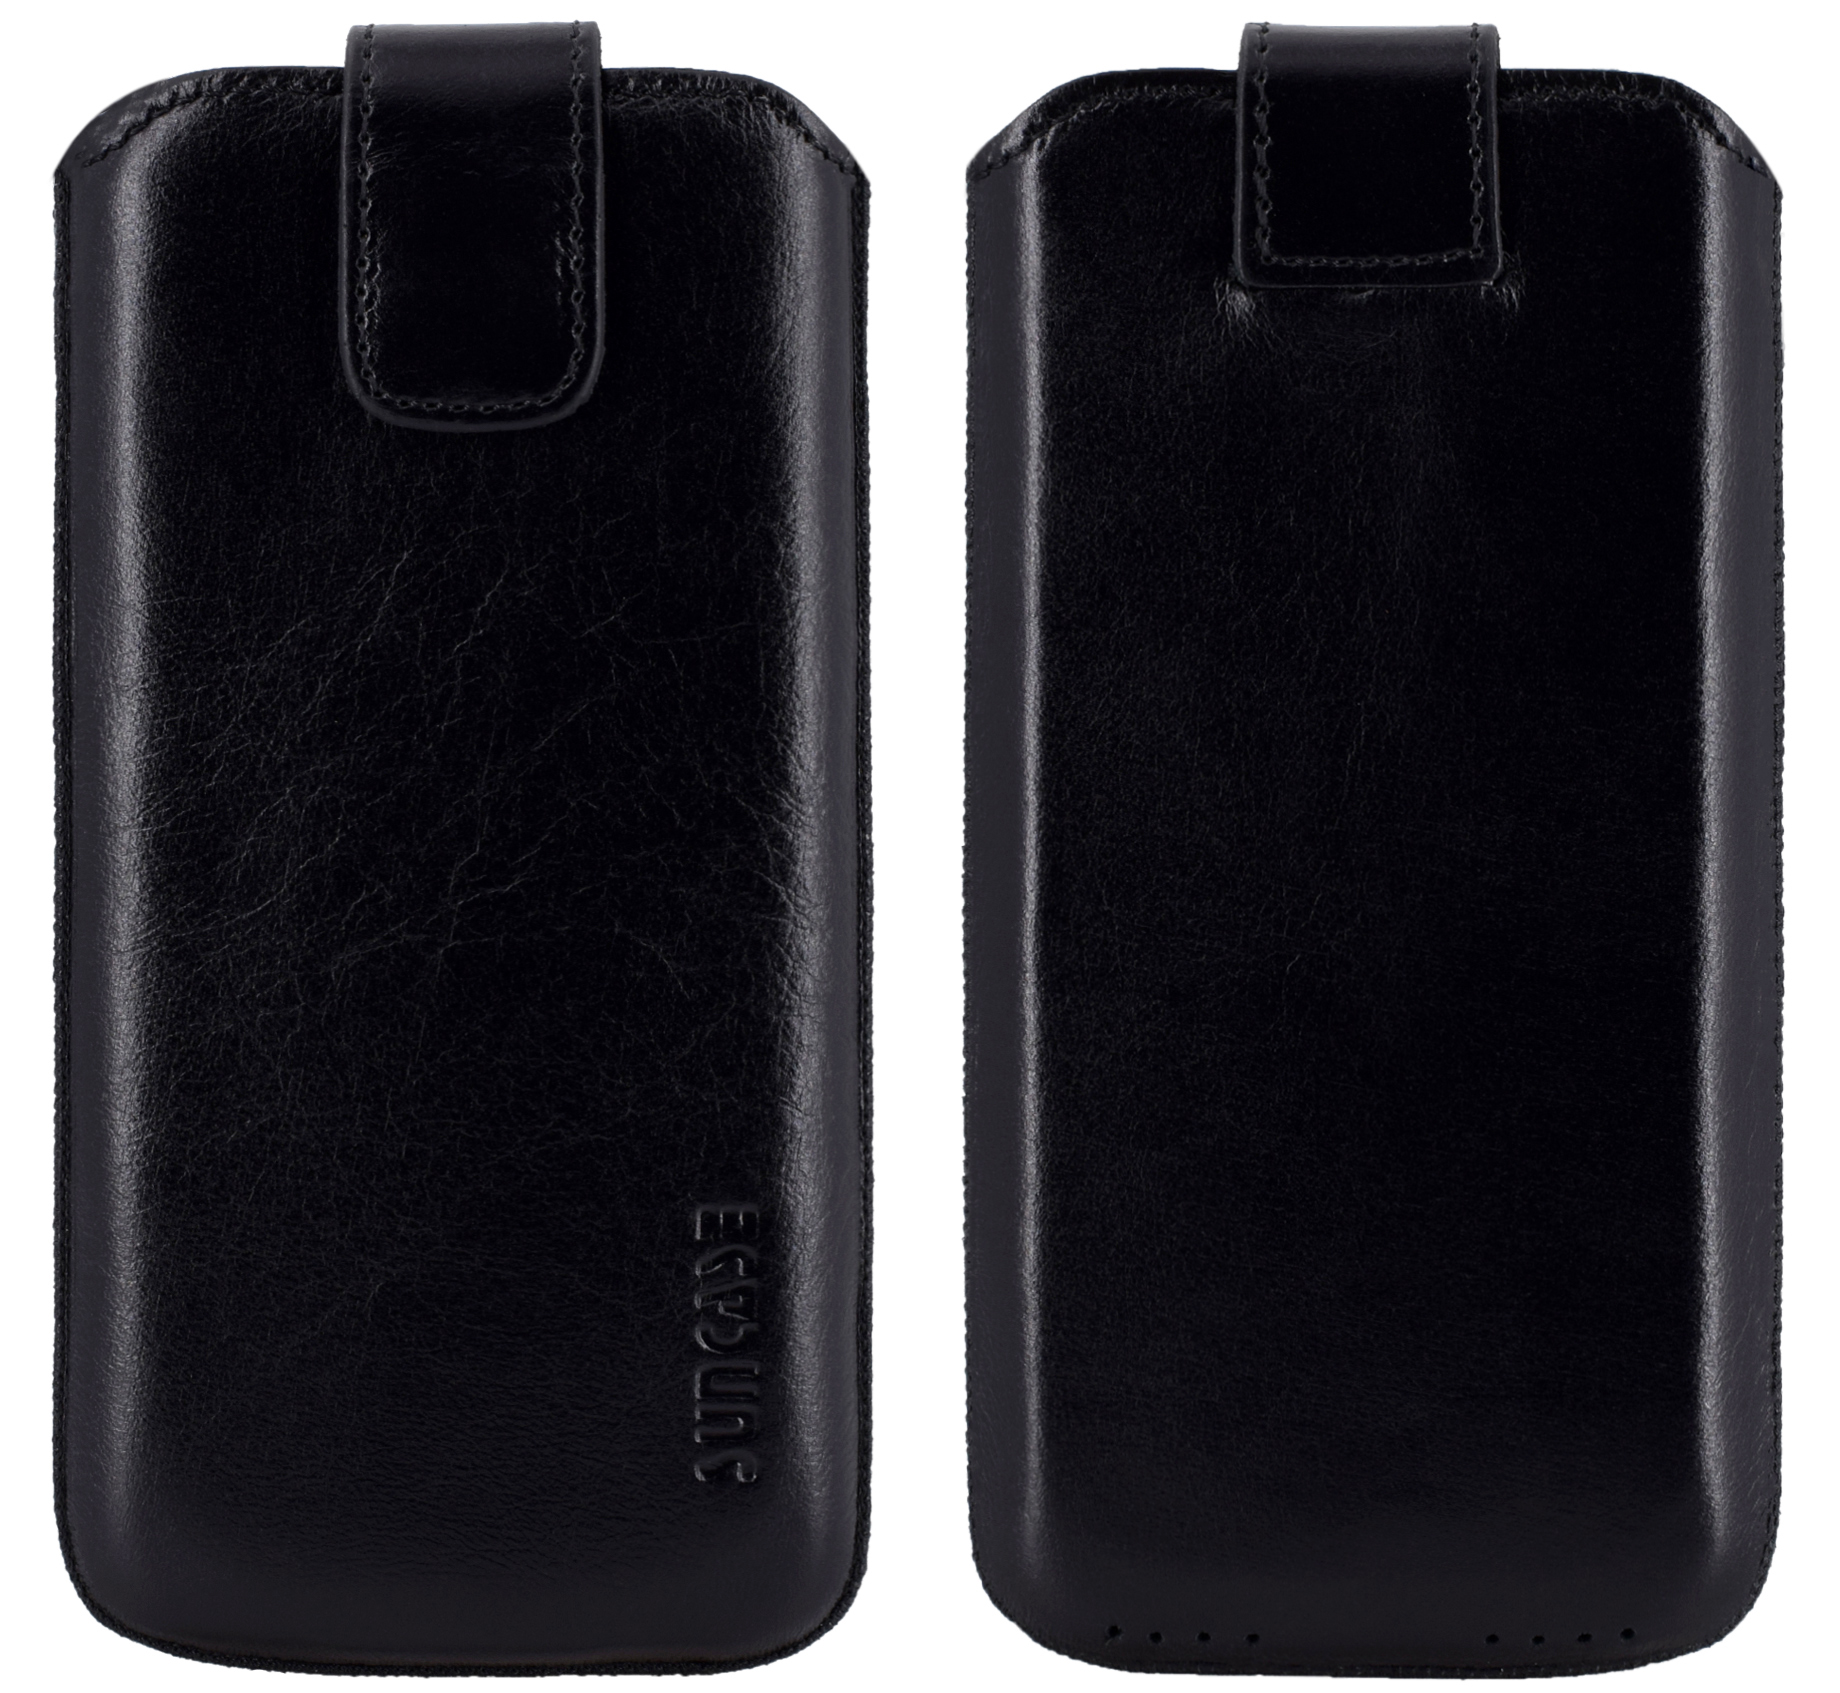 Braune Hülle Tasche für iPhone XS X Cover Leder Etui Case Ledertasche Handyschale Gehäuse Ledertasche Lederetui Lederhülle Handytasche Handysocke Handyhülle 